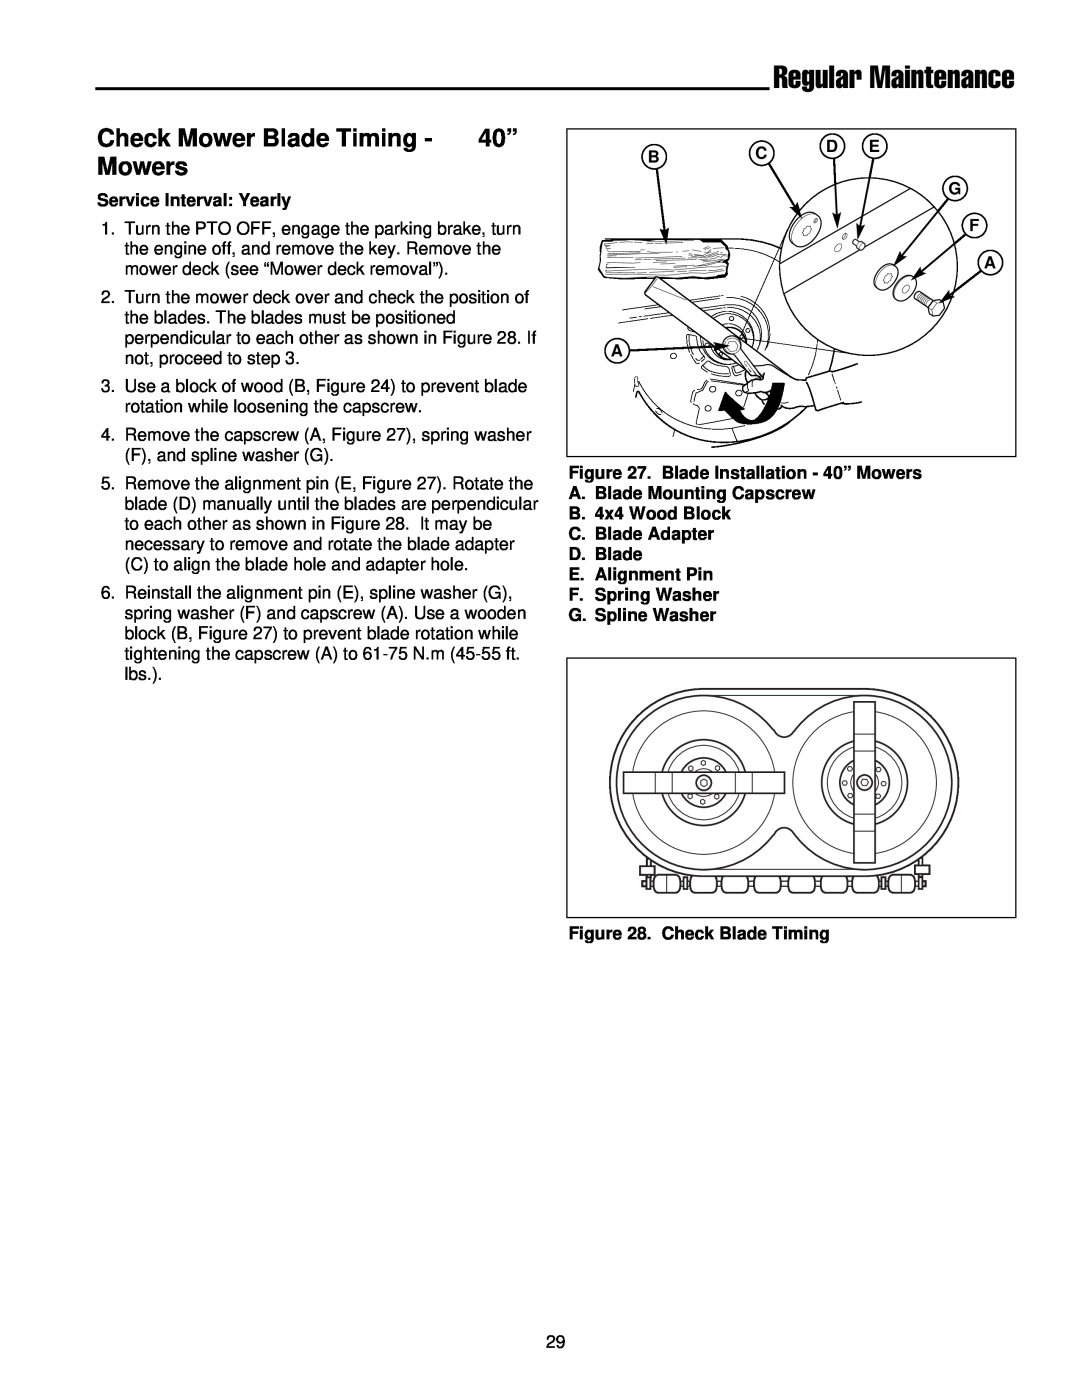 Simplicity 300 Series manual Check Mower Blade Timing - 40” Mowers, Regular Maintenance 